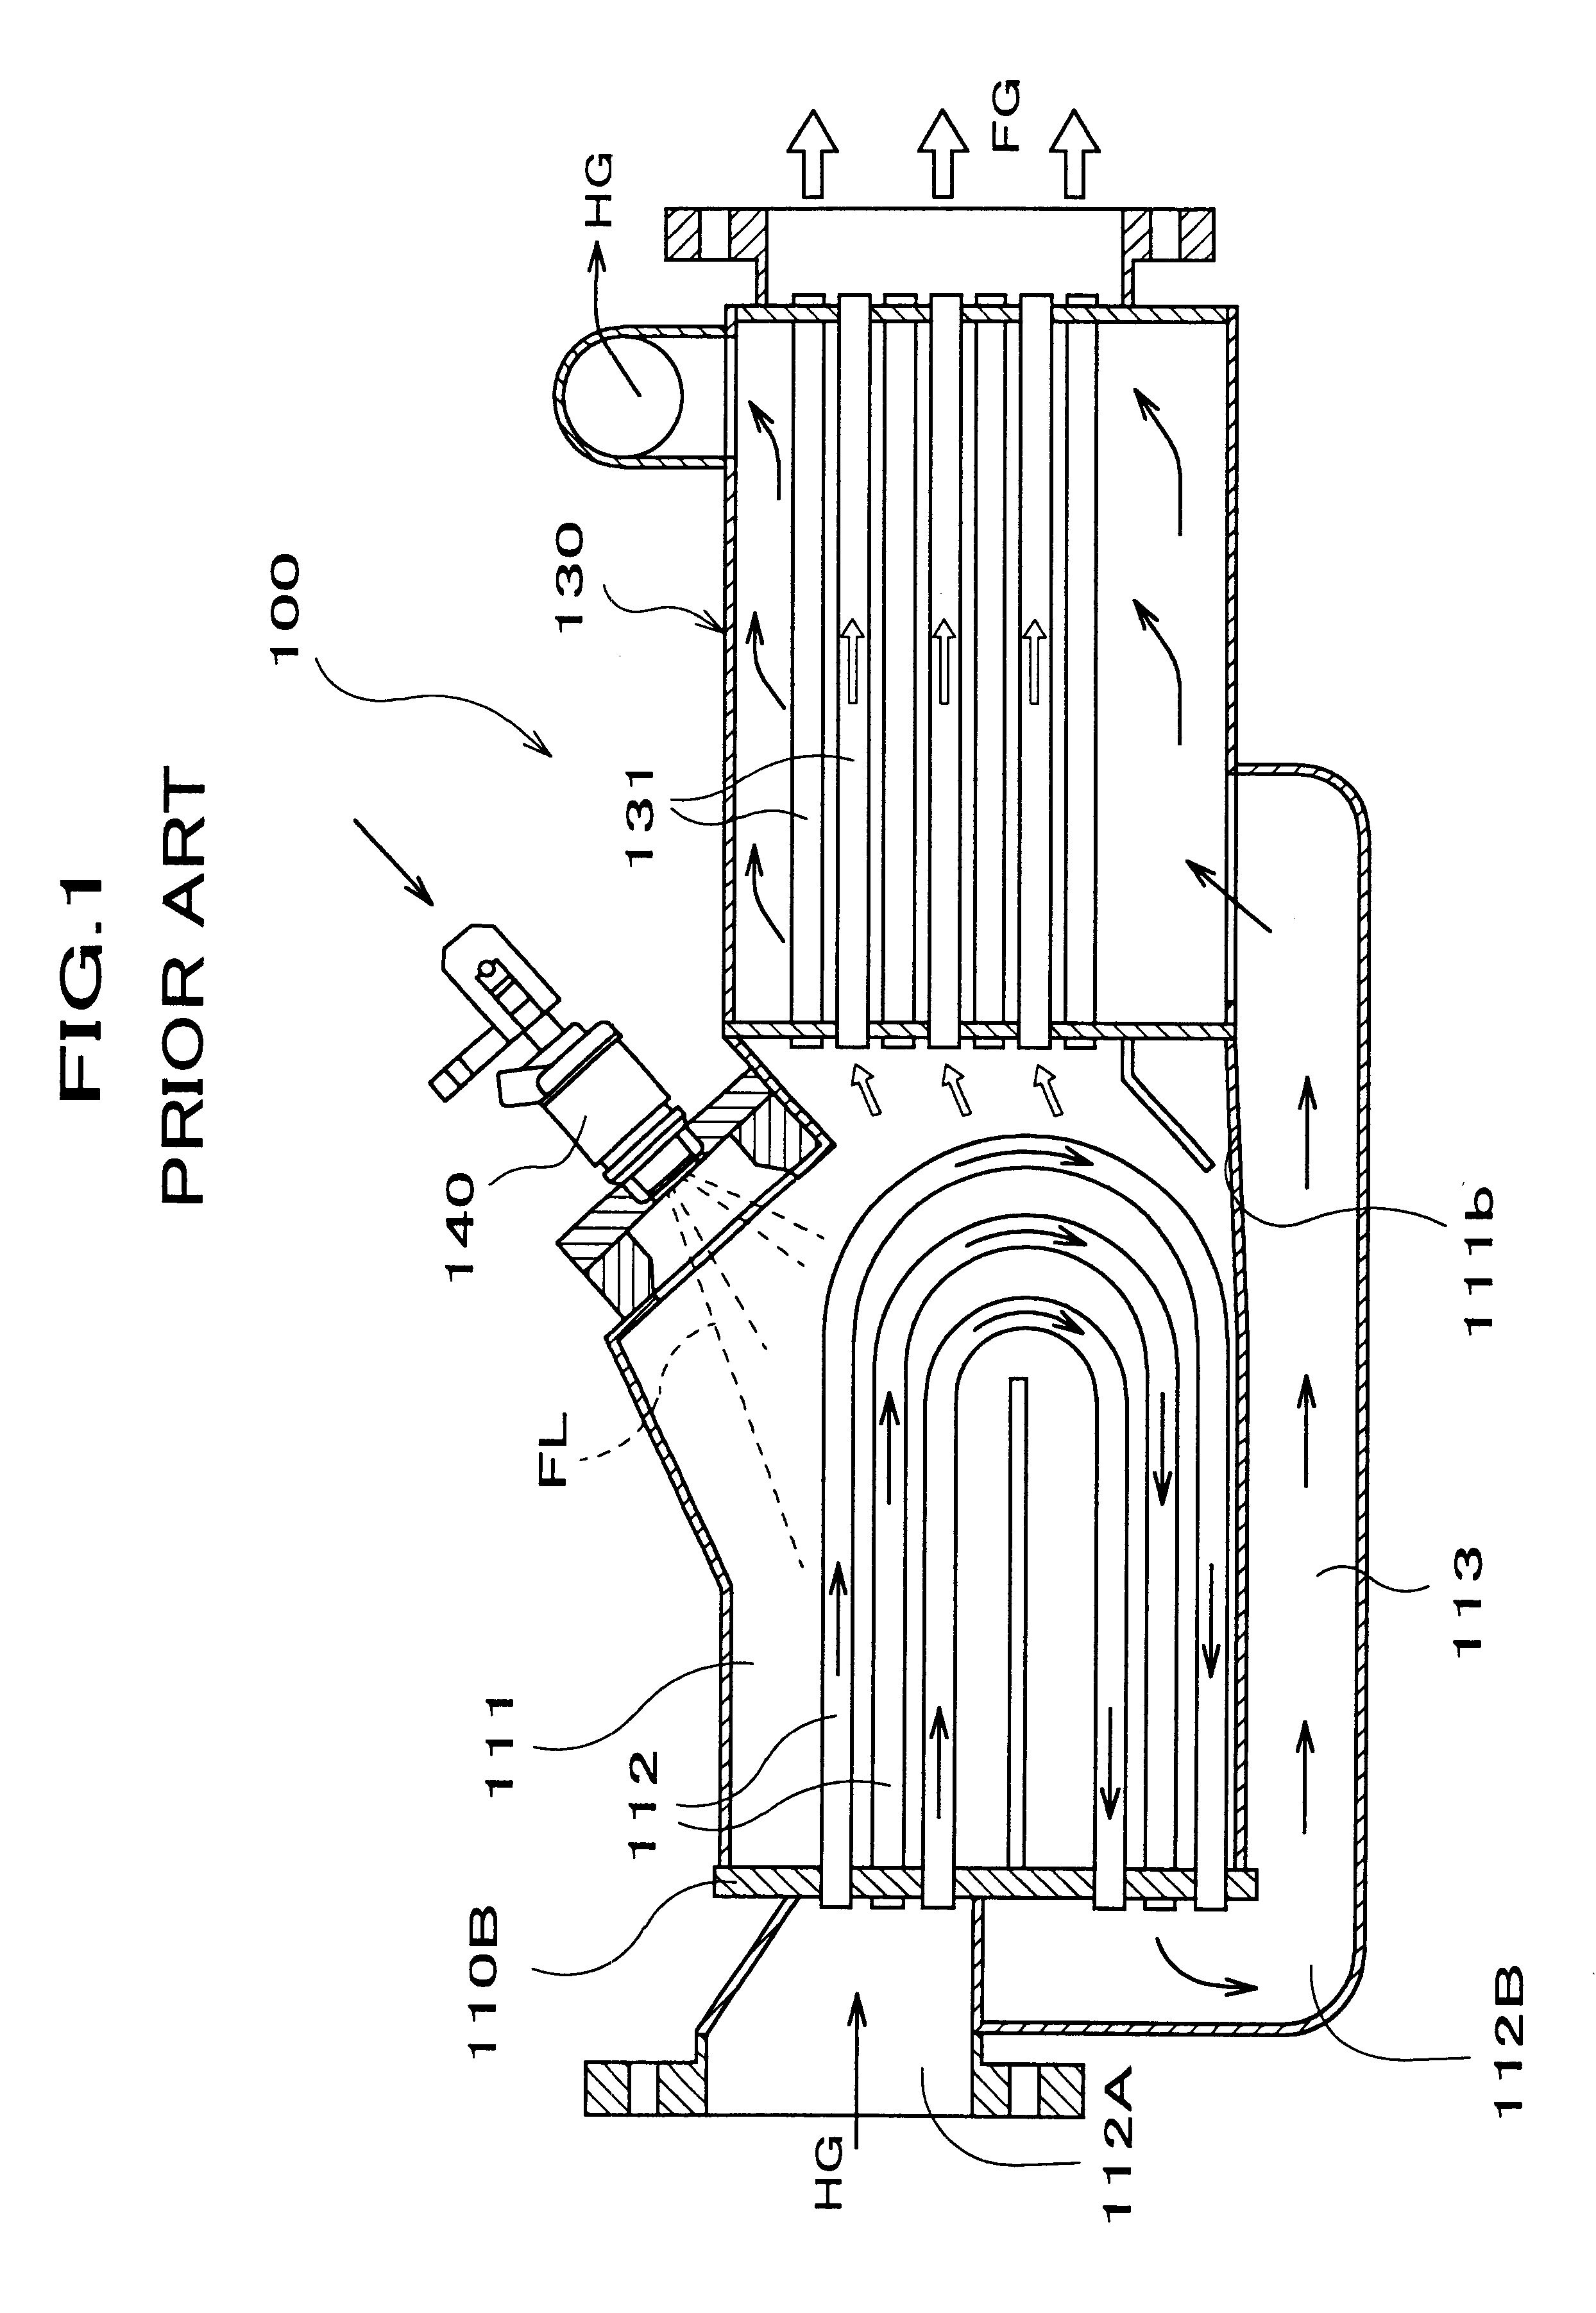 Fuel evaporator